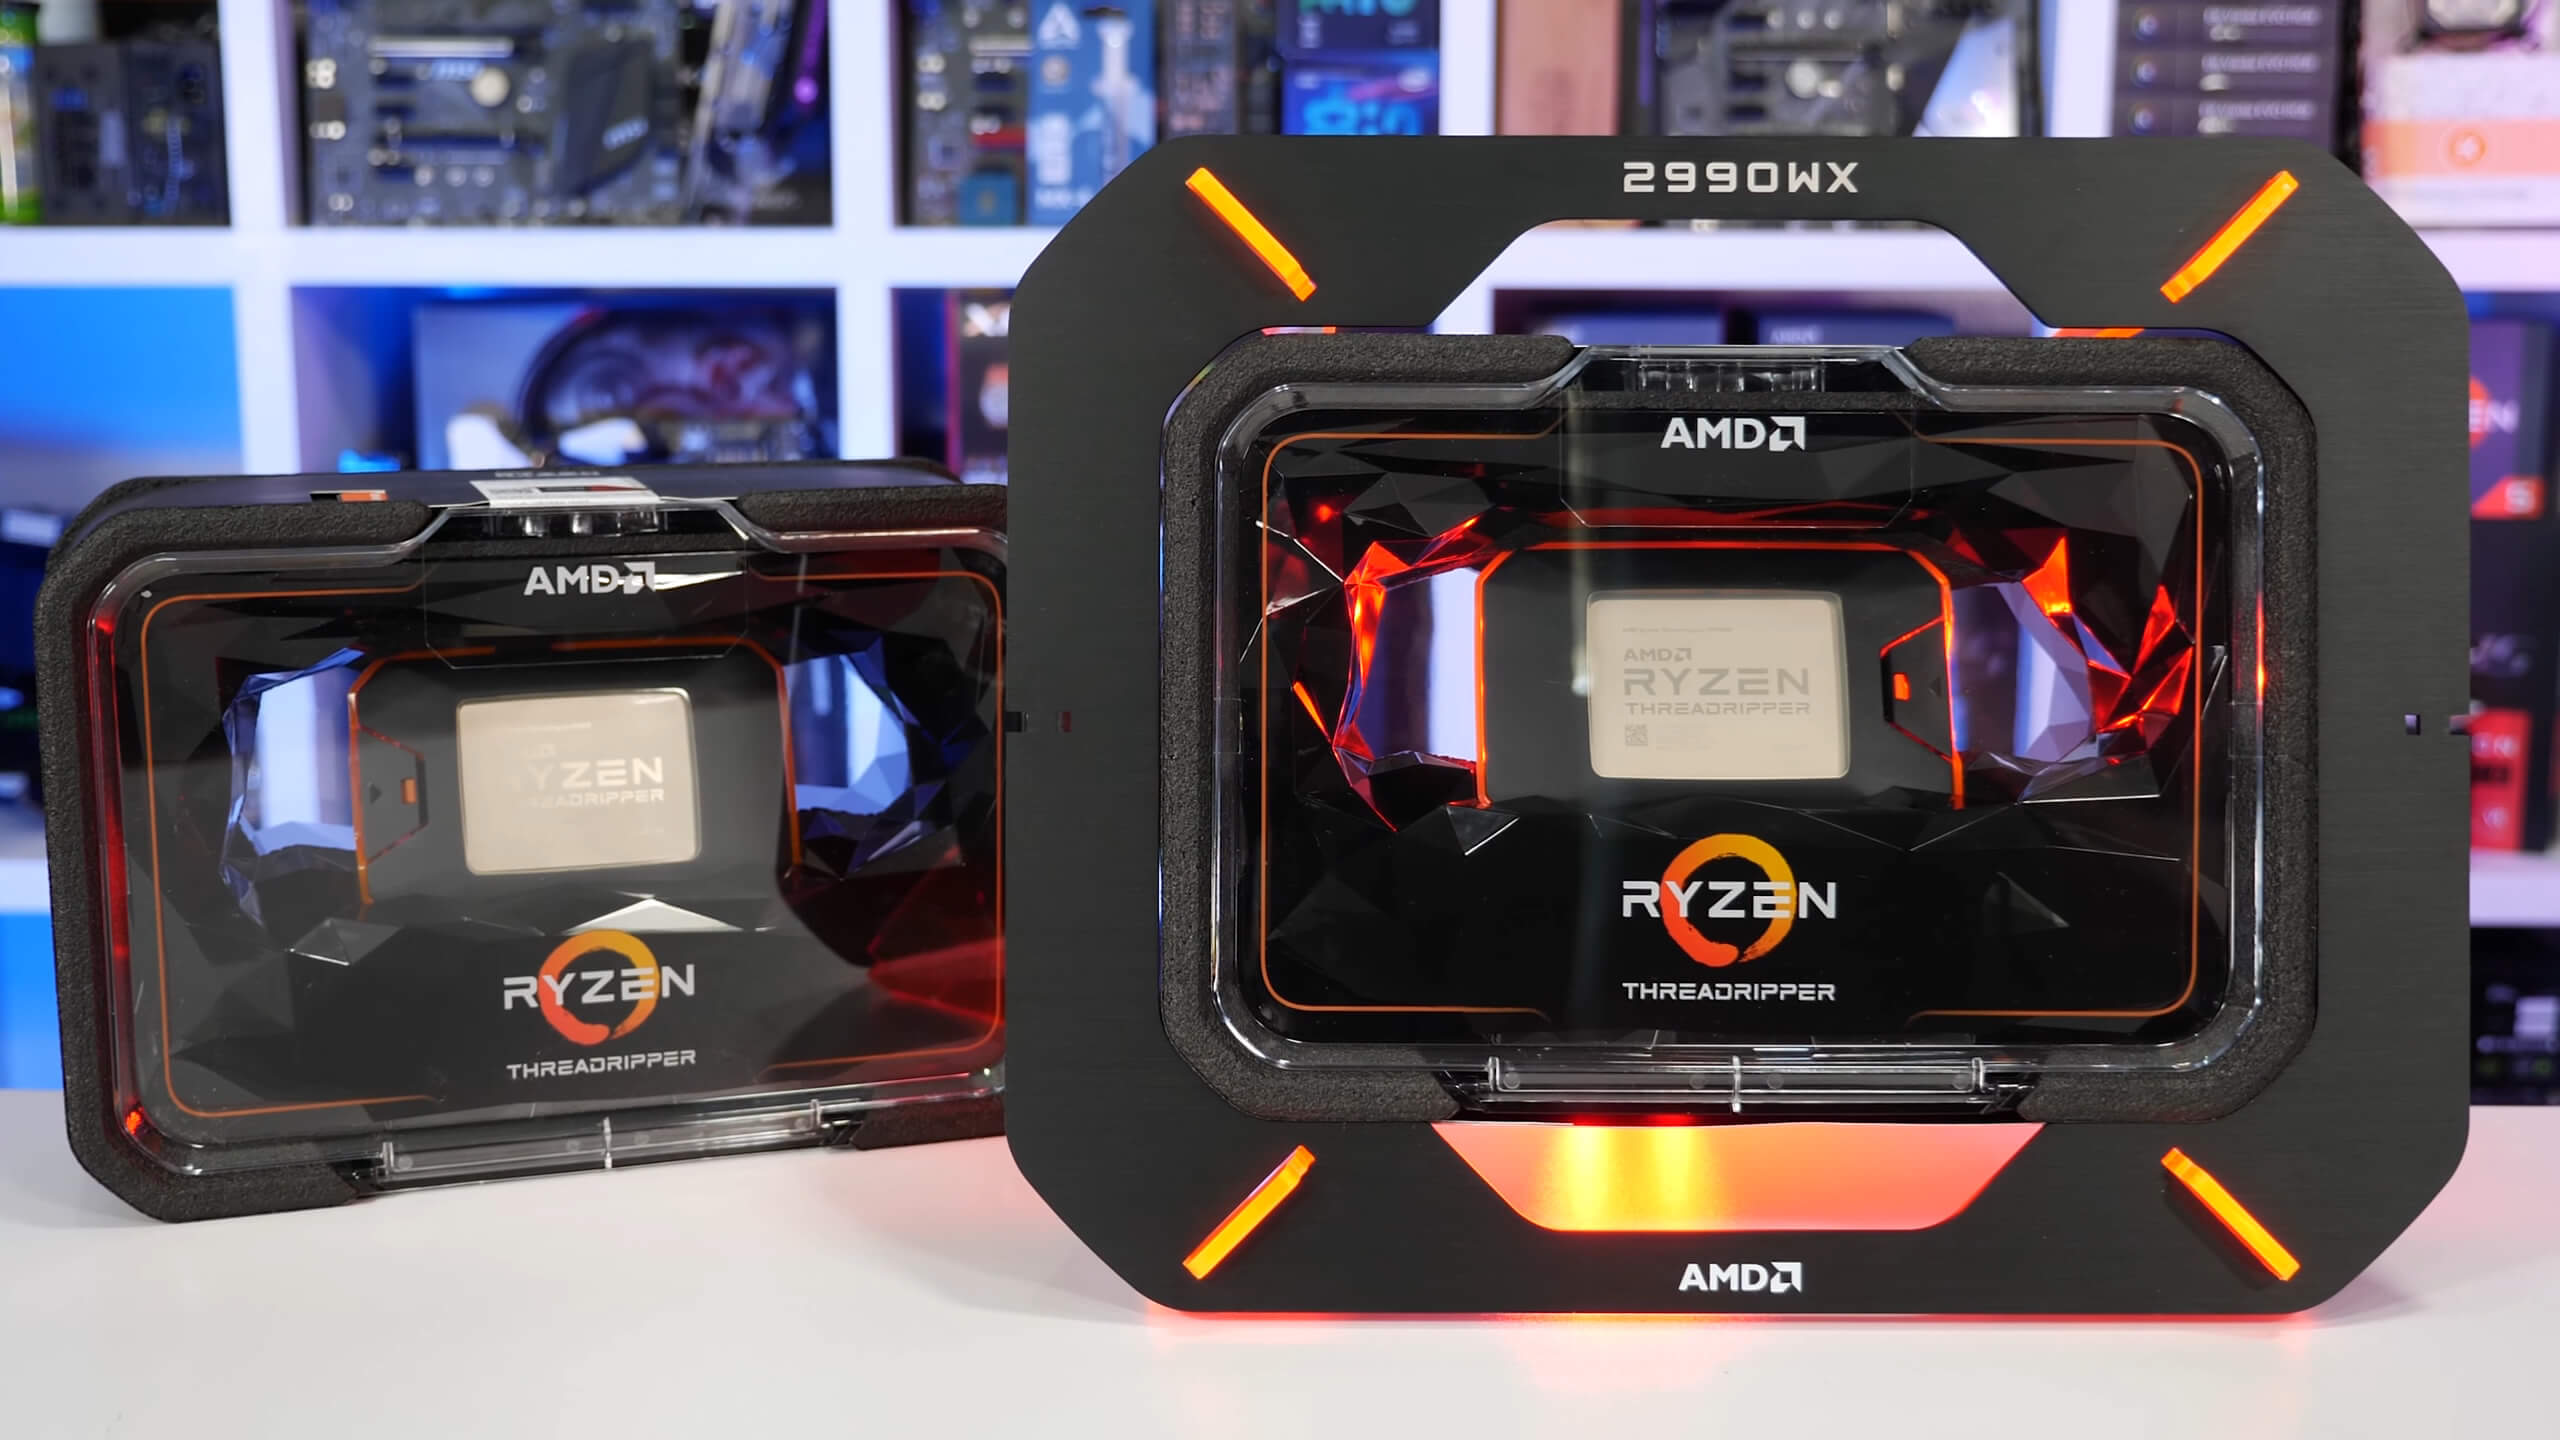 AMD Ryzen Threadripper 2990WX & 2950X Review | TechSpot